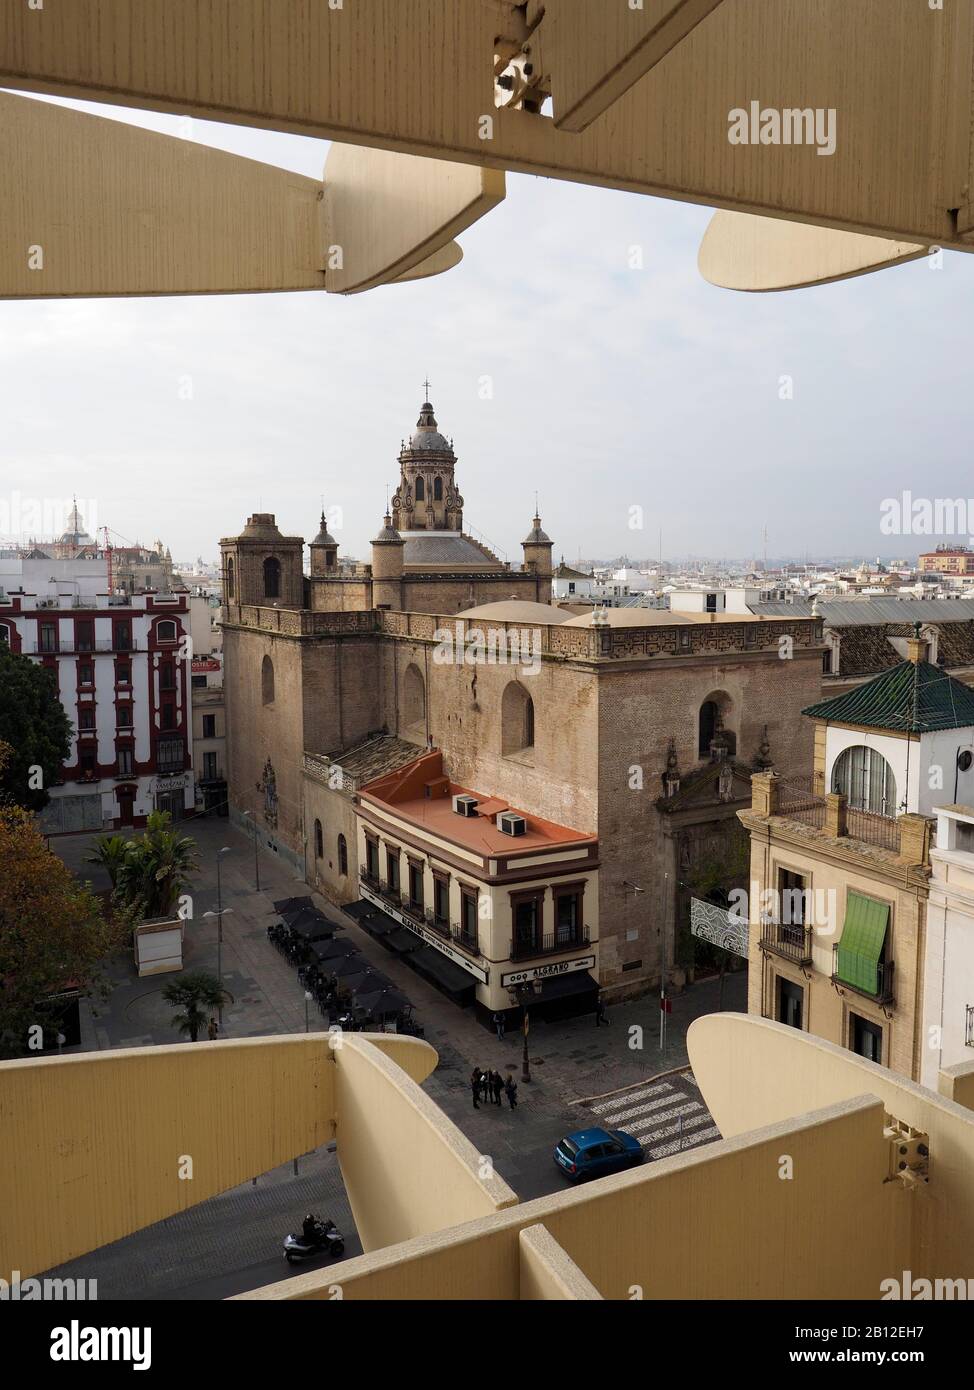 Eglise avec un café construit contre le côté, Plaza de Encarnacion, Sevilla, Espagne Banque D'Images